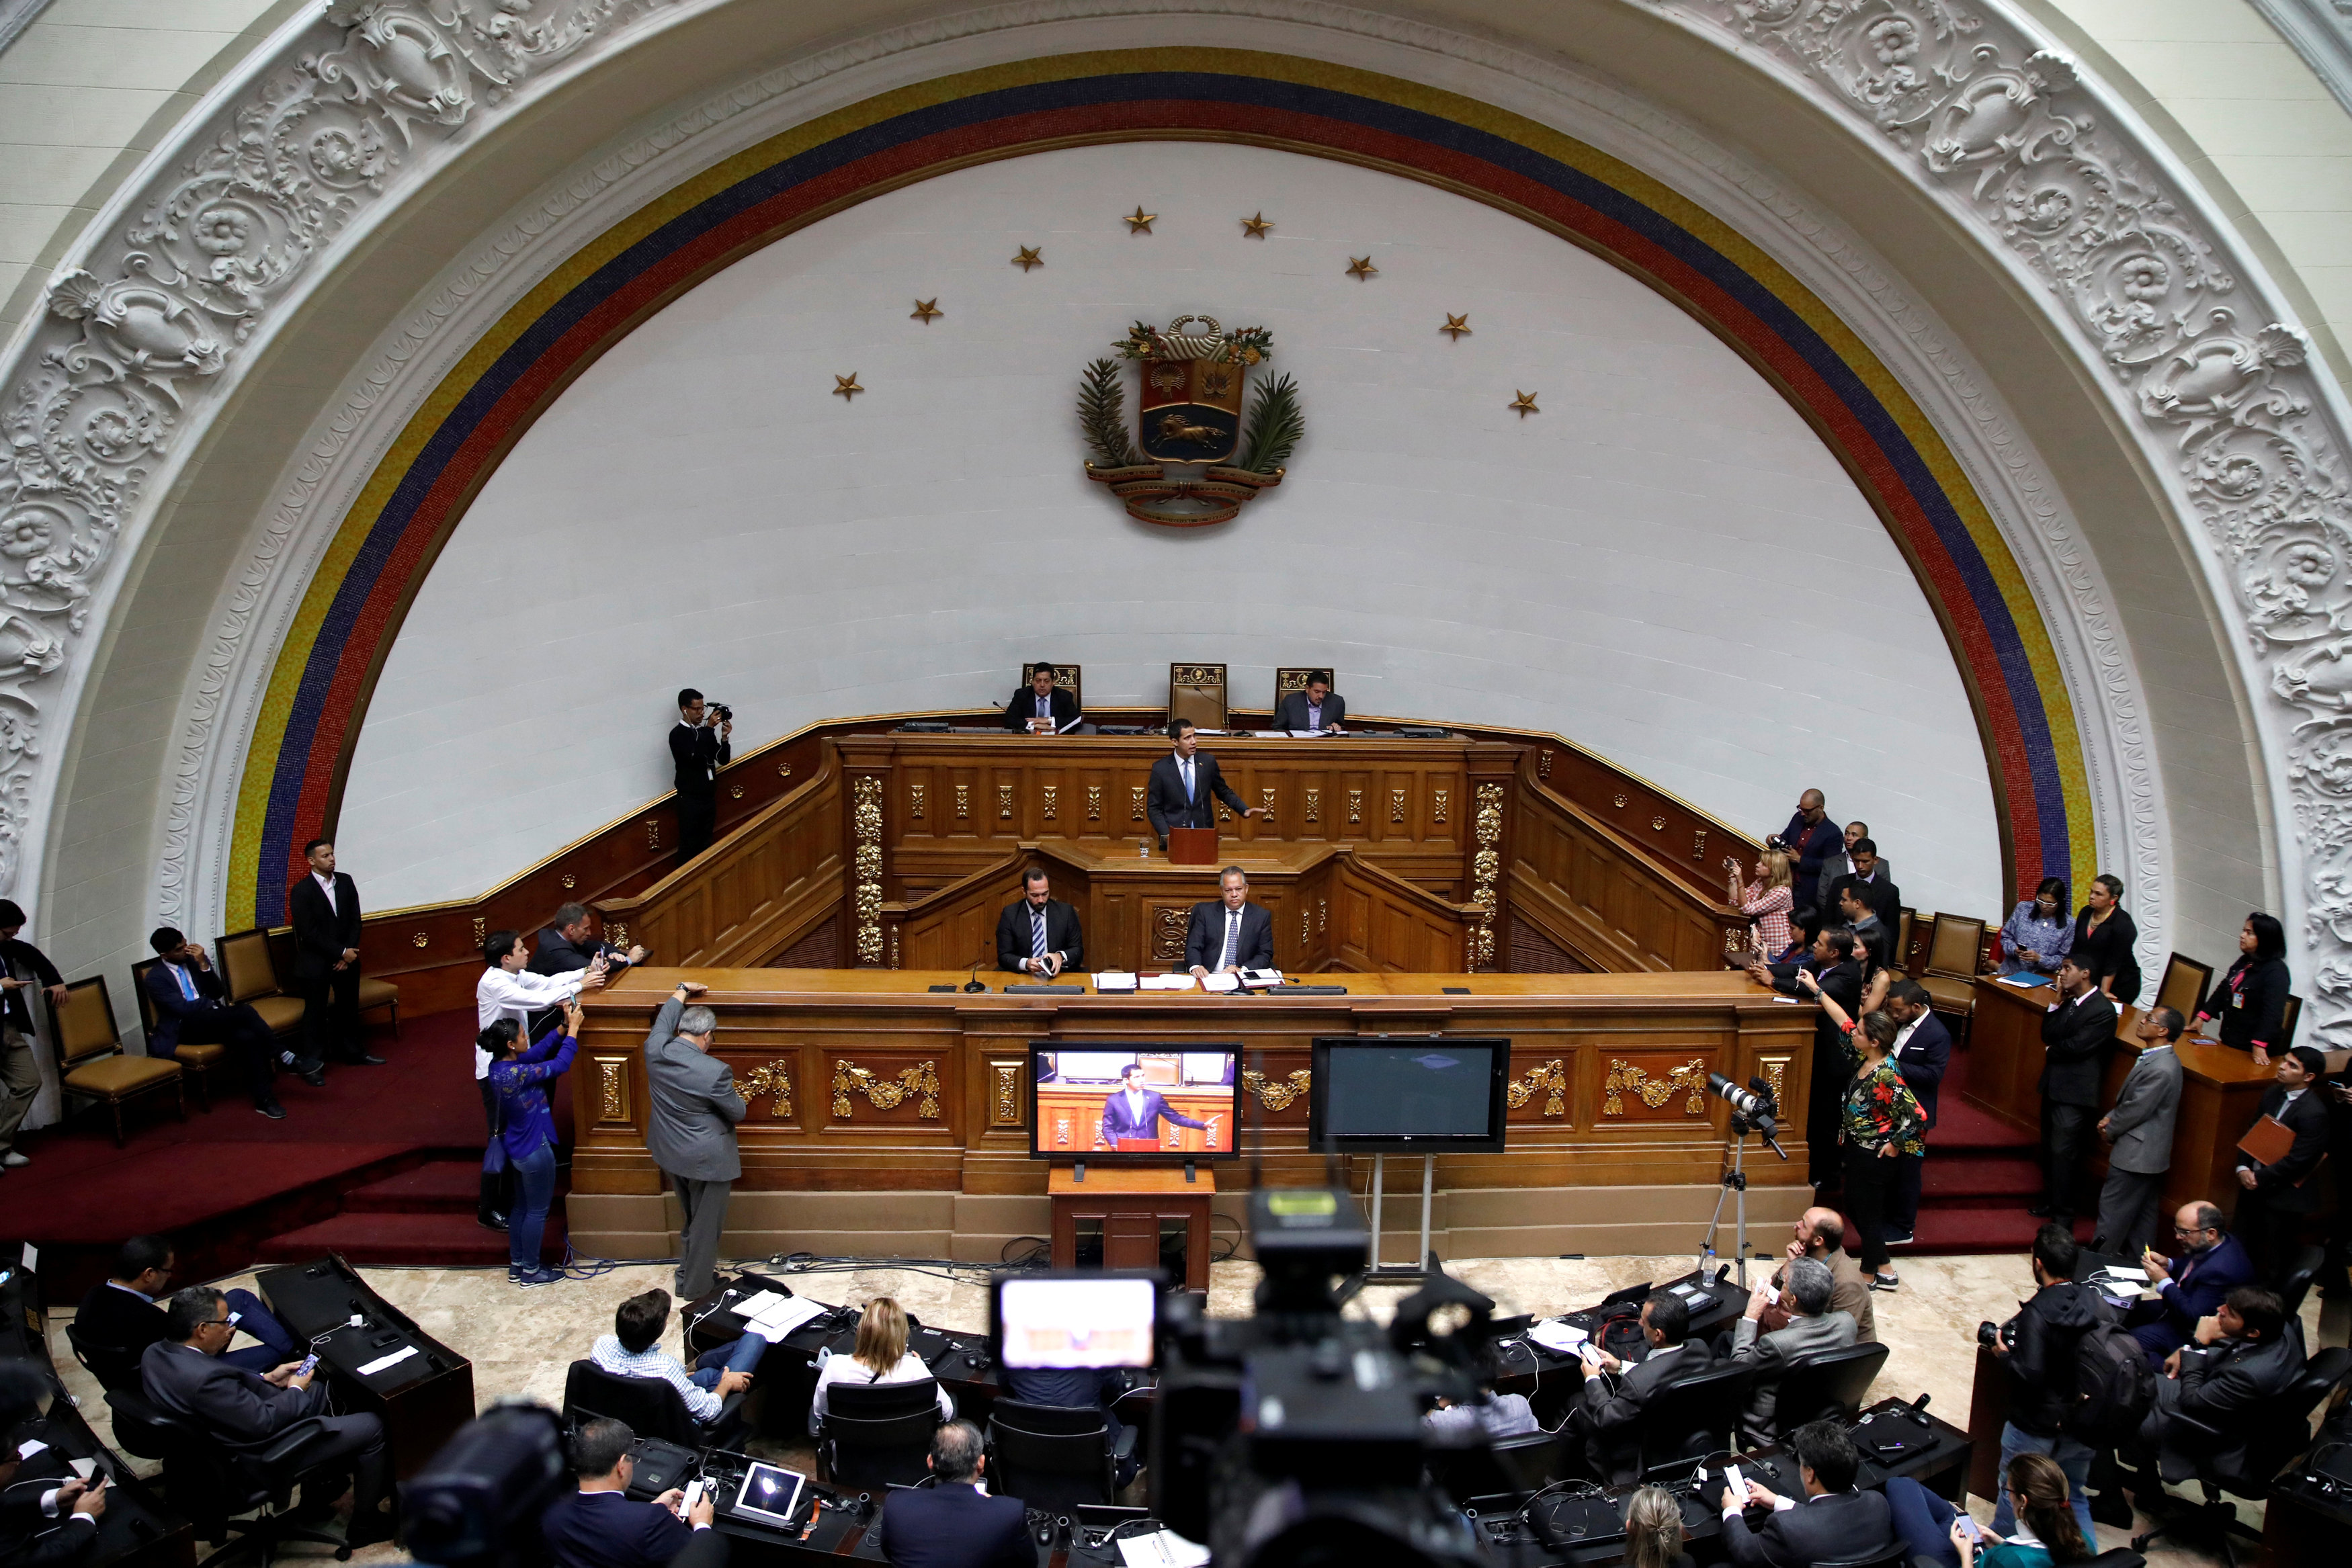 AN aprobó decreto propuesto por Guaidó sobre Estado de Alarma ante gran apagón en Venezuela (Documento)